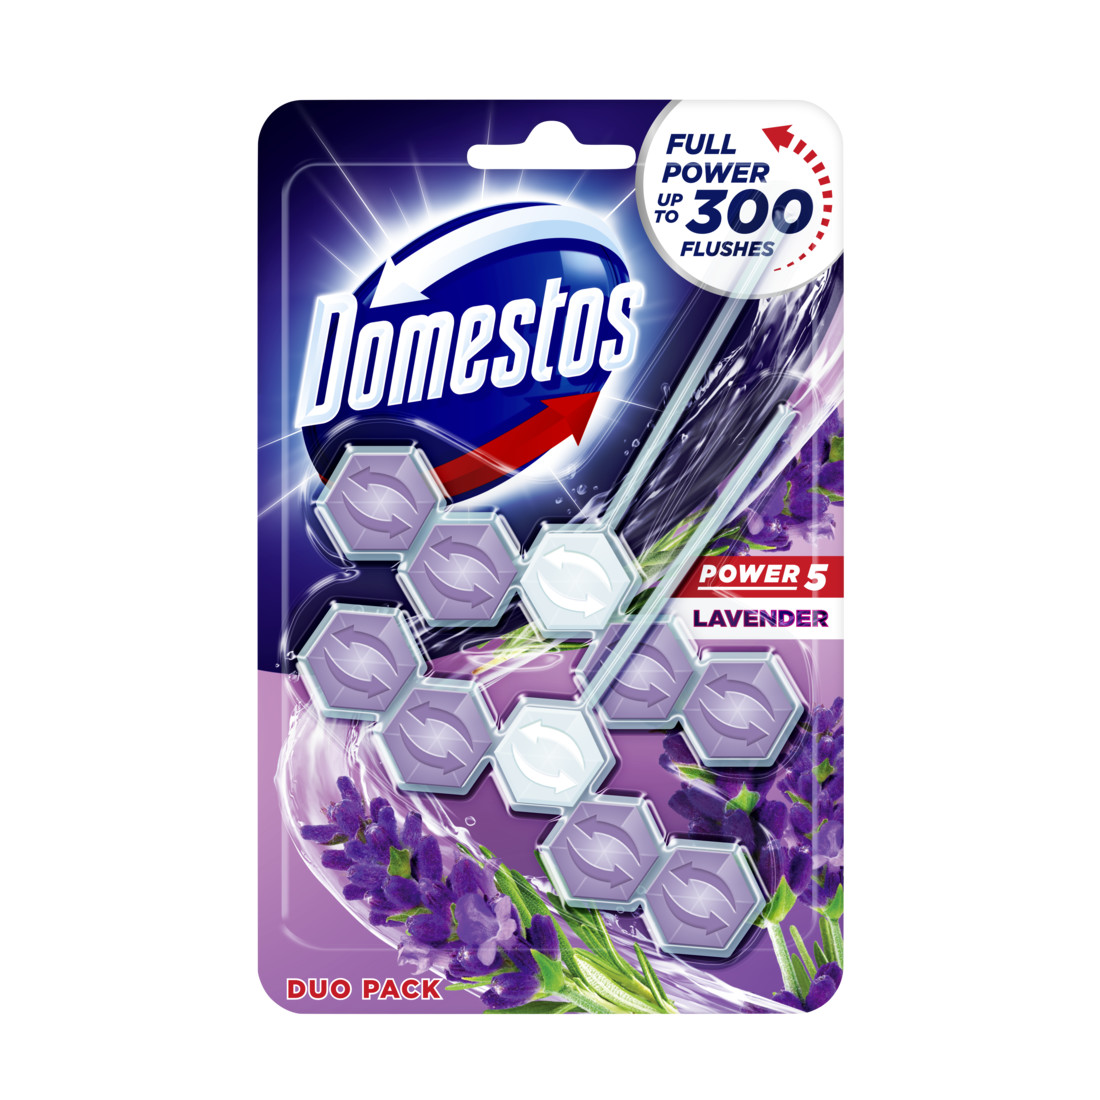 Domestos power5 wc frissítő blokk lavender